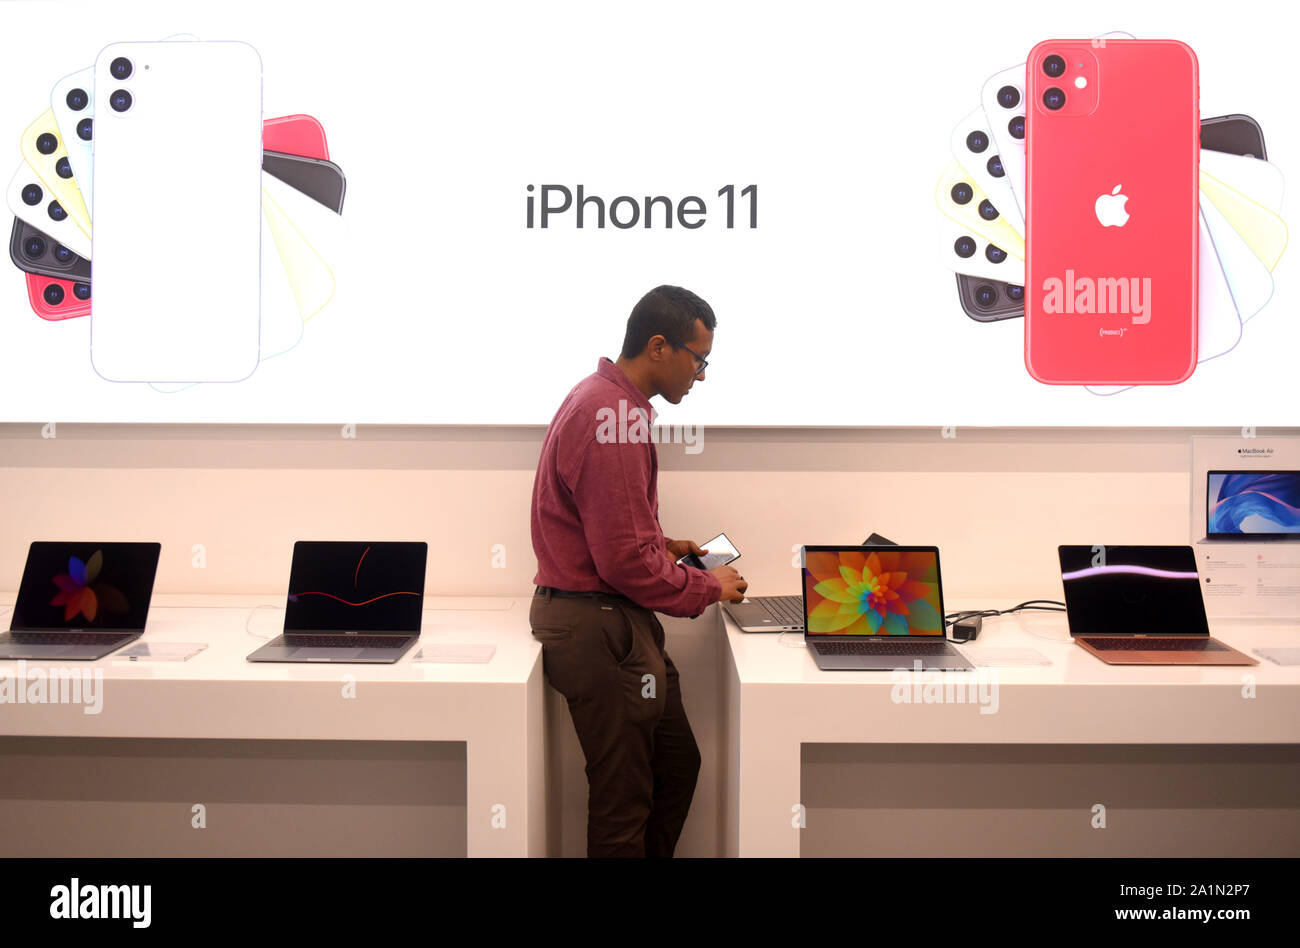 Ein Demonstrator prüft die Spezifikation der neu lancierte Apple Telefon an ein Einkaufszentrum in Kalkutta. Apple iPhone 11 Smartphone offiziell in Indien gestartet. Stockfoto